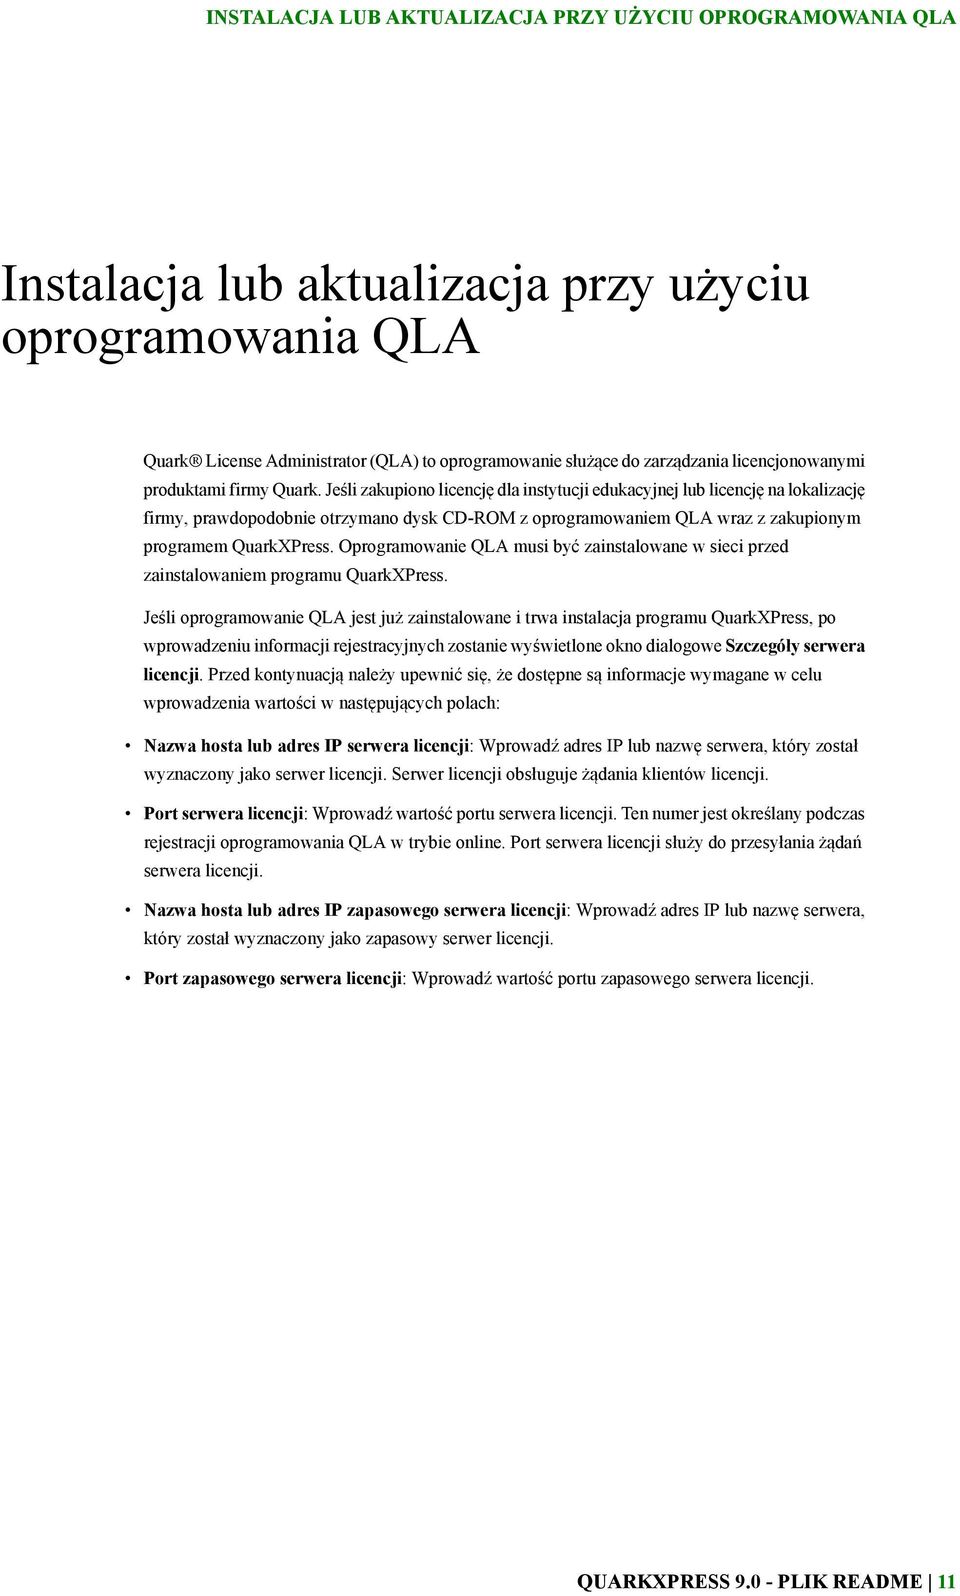 Jeśli zakupiono licencję dla instytucji edukacyjnej lub licencję na lokalizację firmy, prawdopodobnie otrzymano dysk CD-ROM z oprogramowaniem QLA wraz z zakupionym programem QuarkXPress.